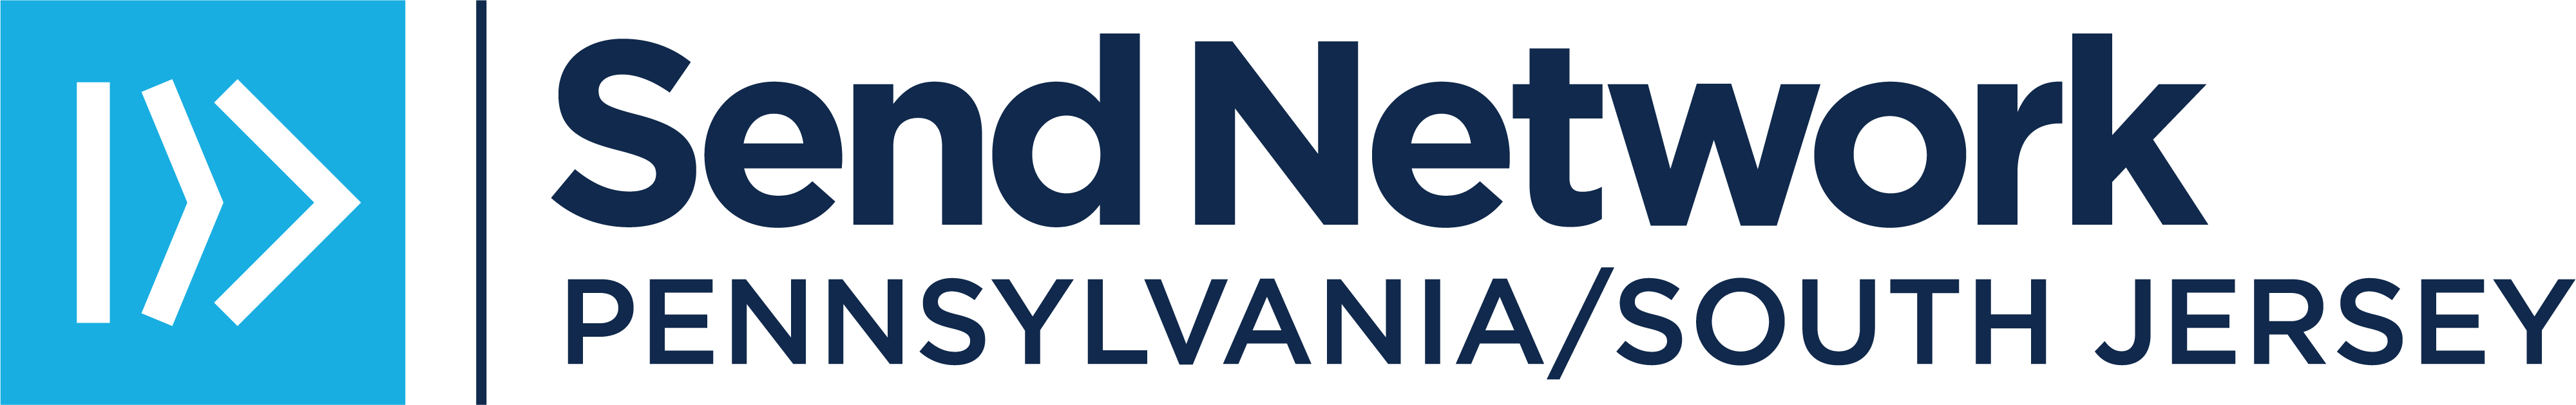 SN Pennsylvania:South Jersey Logo_BlueNavy